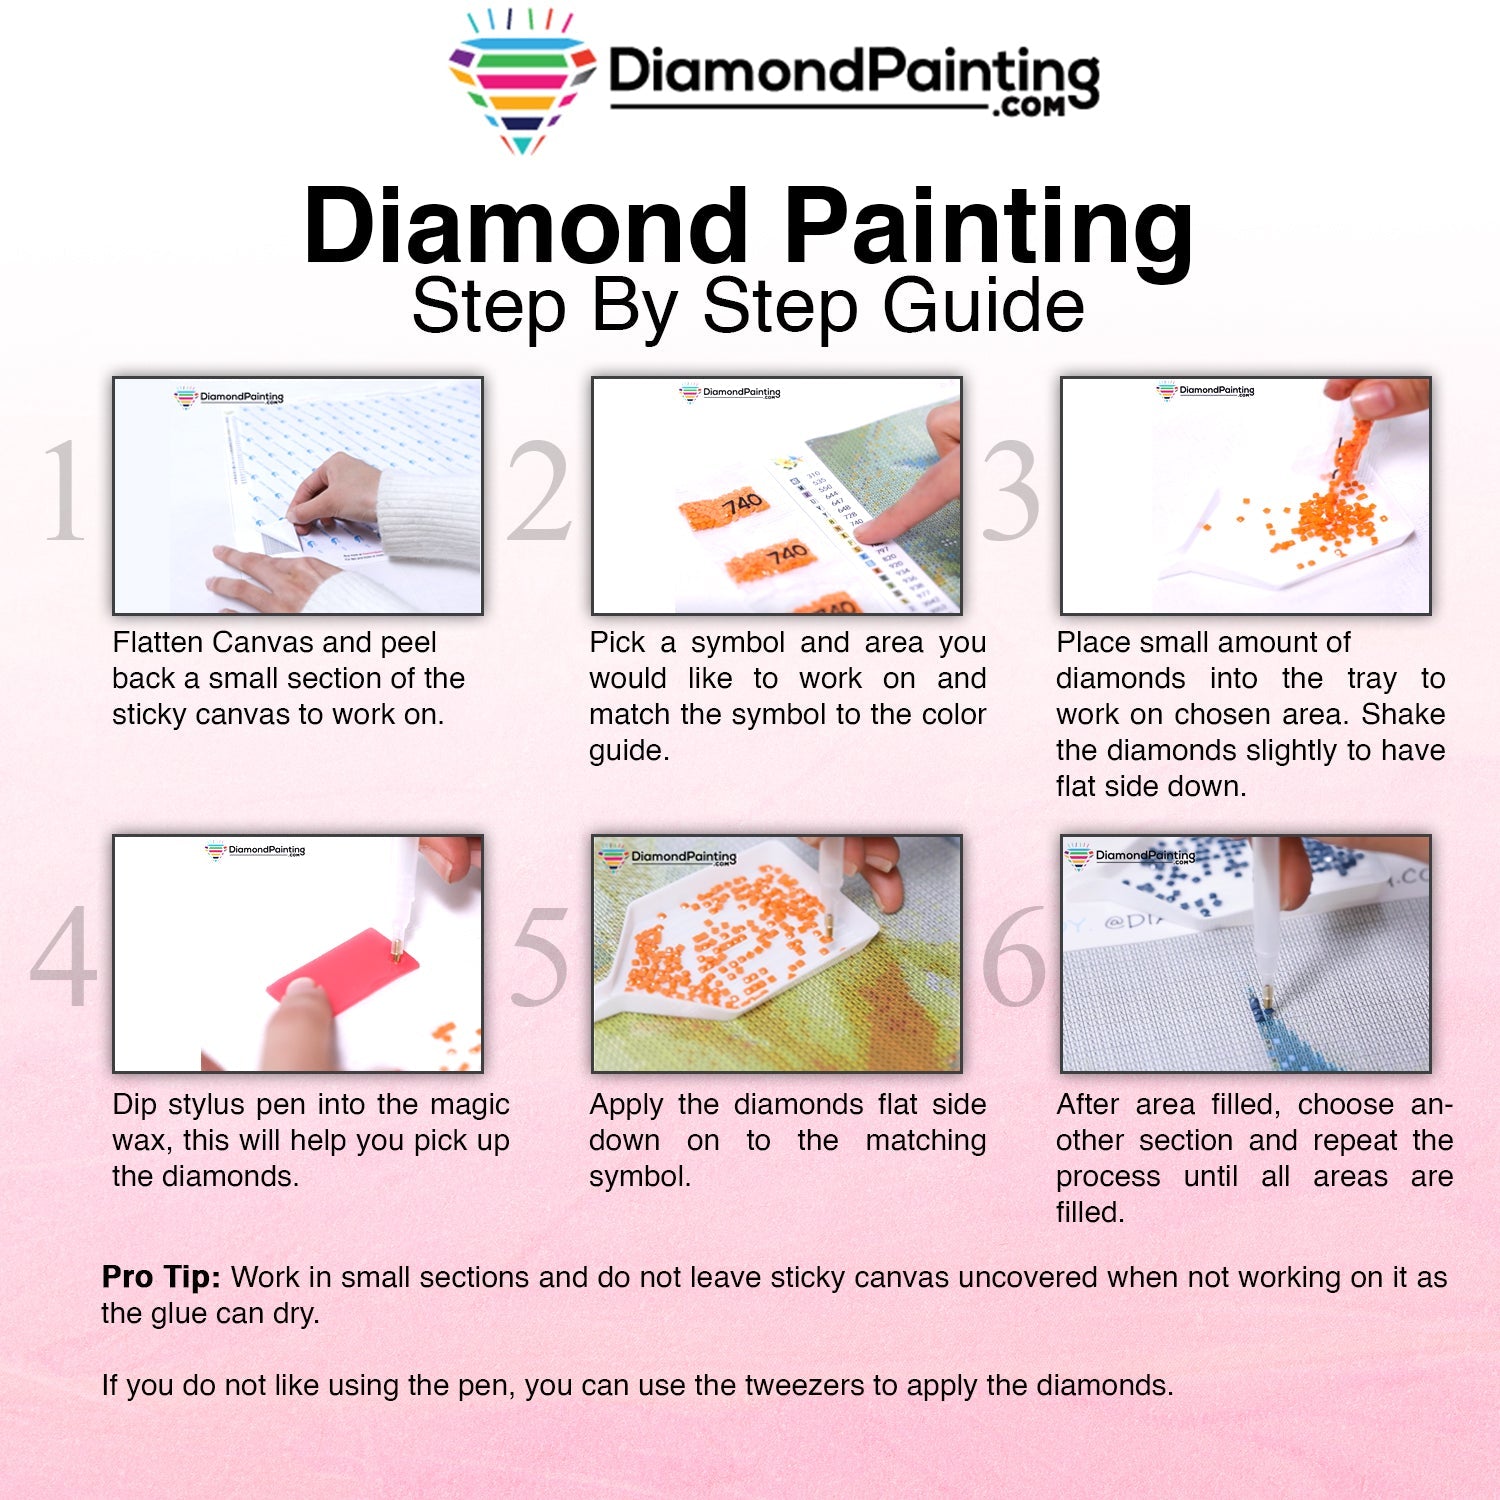 Order Extra Diamonds – Diamond Painting